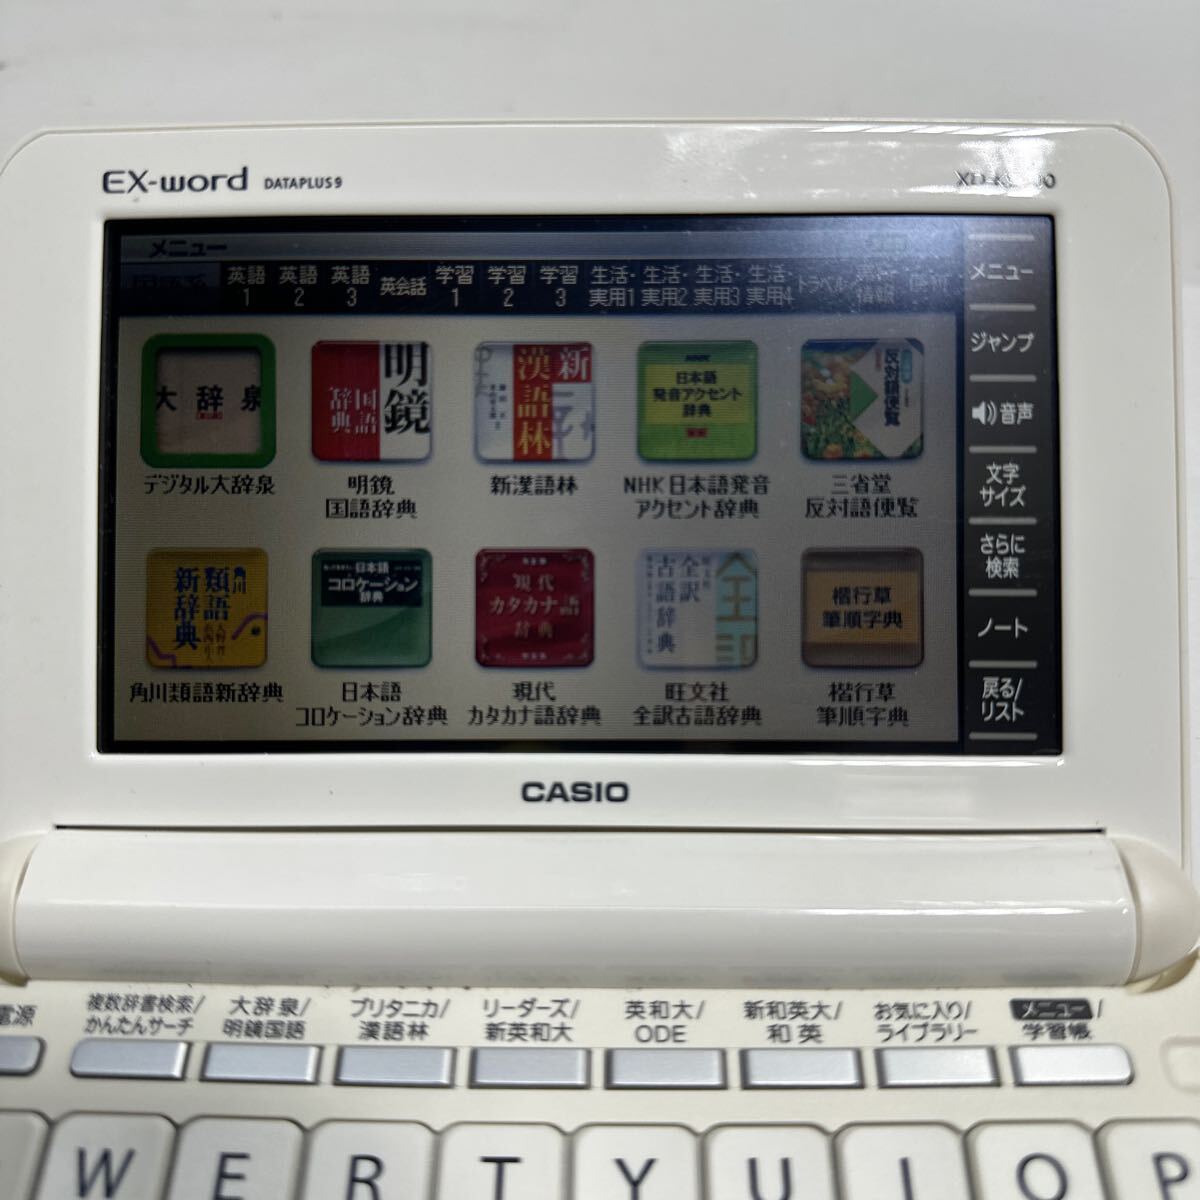 「T61_2N」CASIO カシオ EX-word エクスワード 電子辞書 XD-K9800 本体のみ_画像2